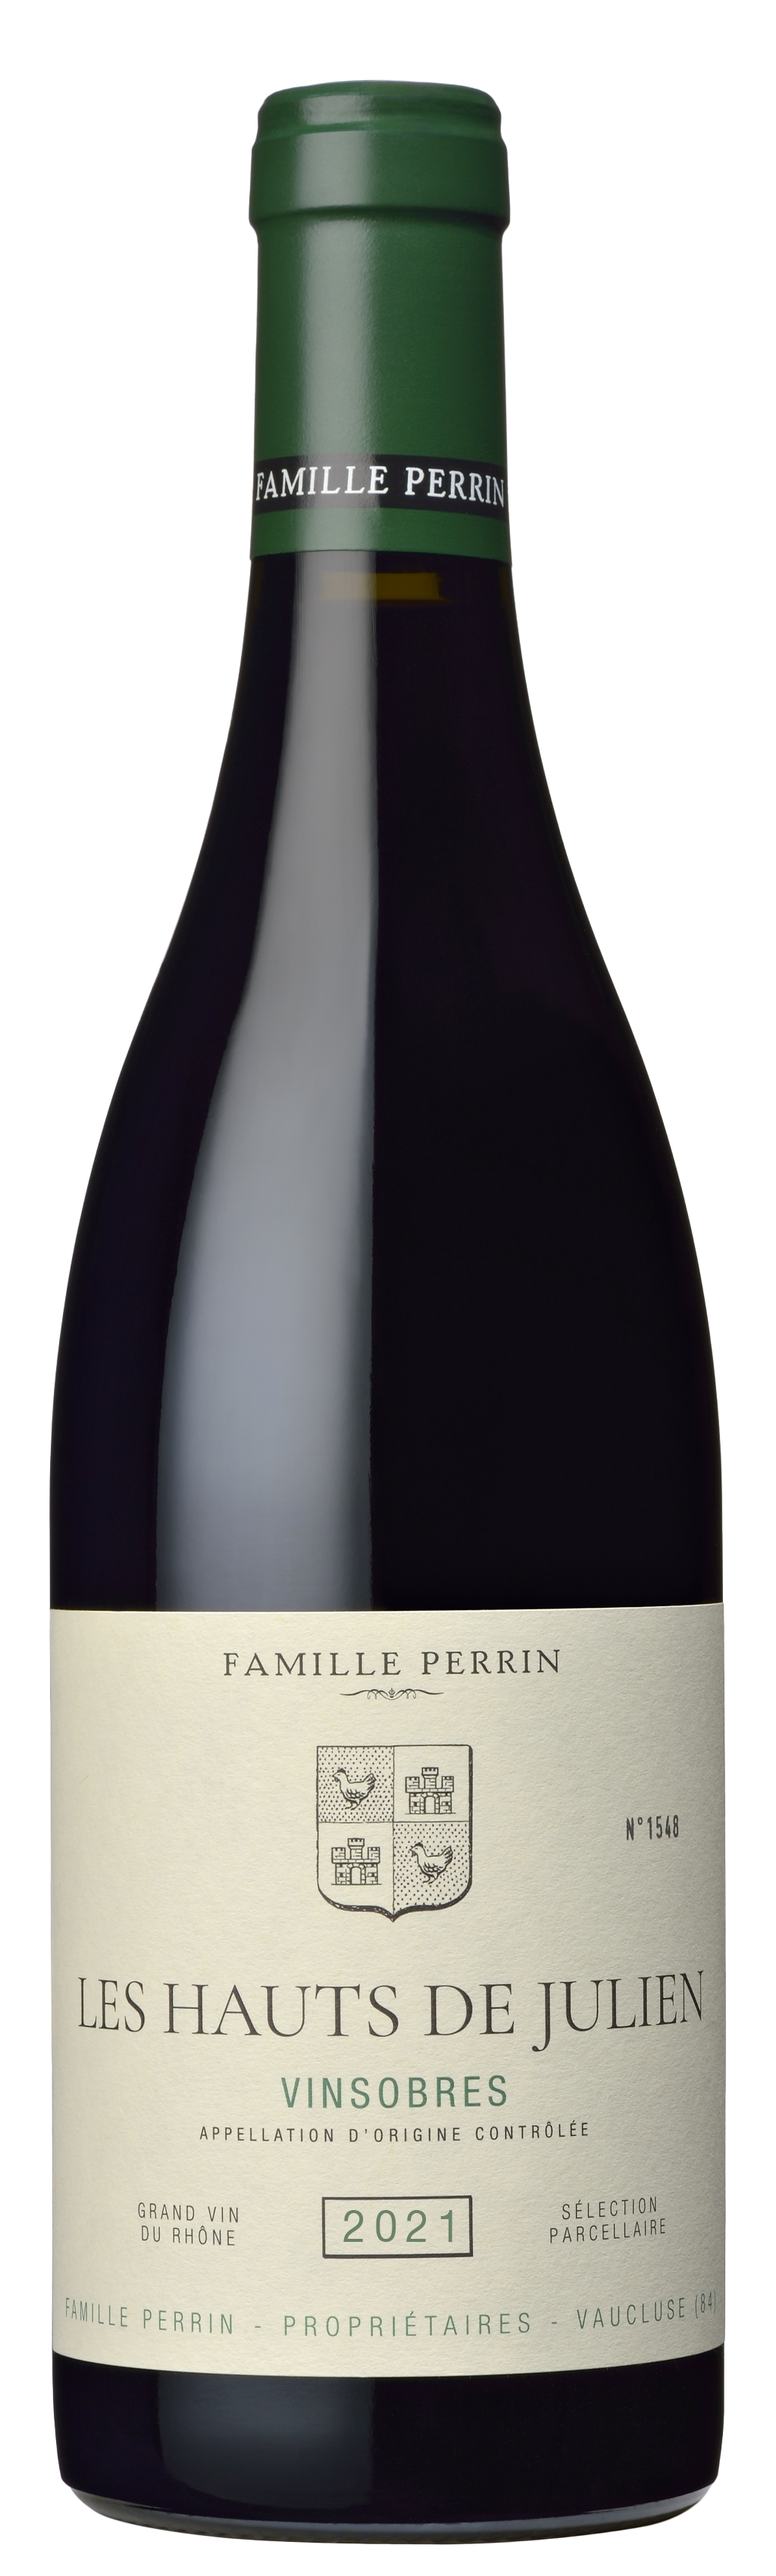 Famille Perrin Sélections Parcellaires Vinsobres - Les Hauts de Julien Vieilles Vignes - 2021